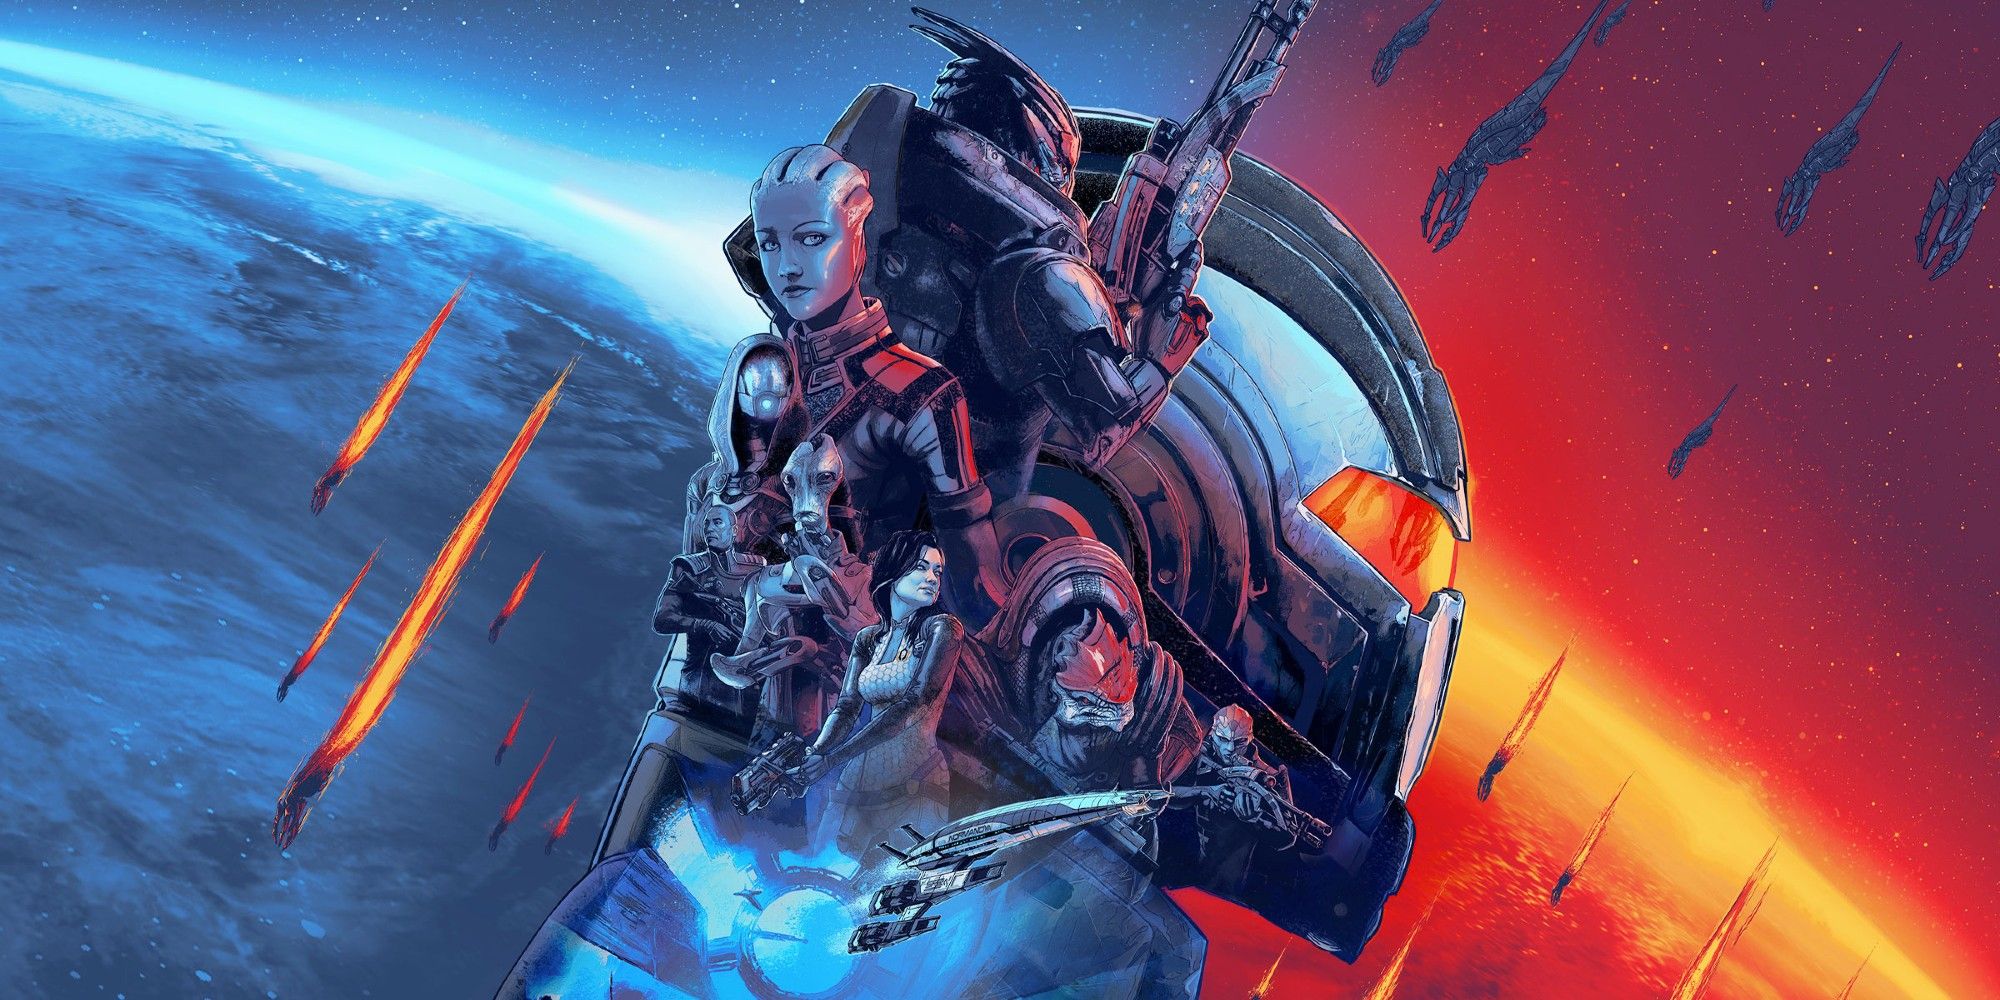 Mass Effect Legendary Edition Key art